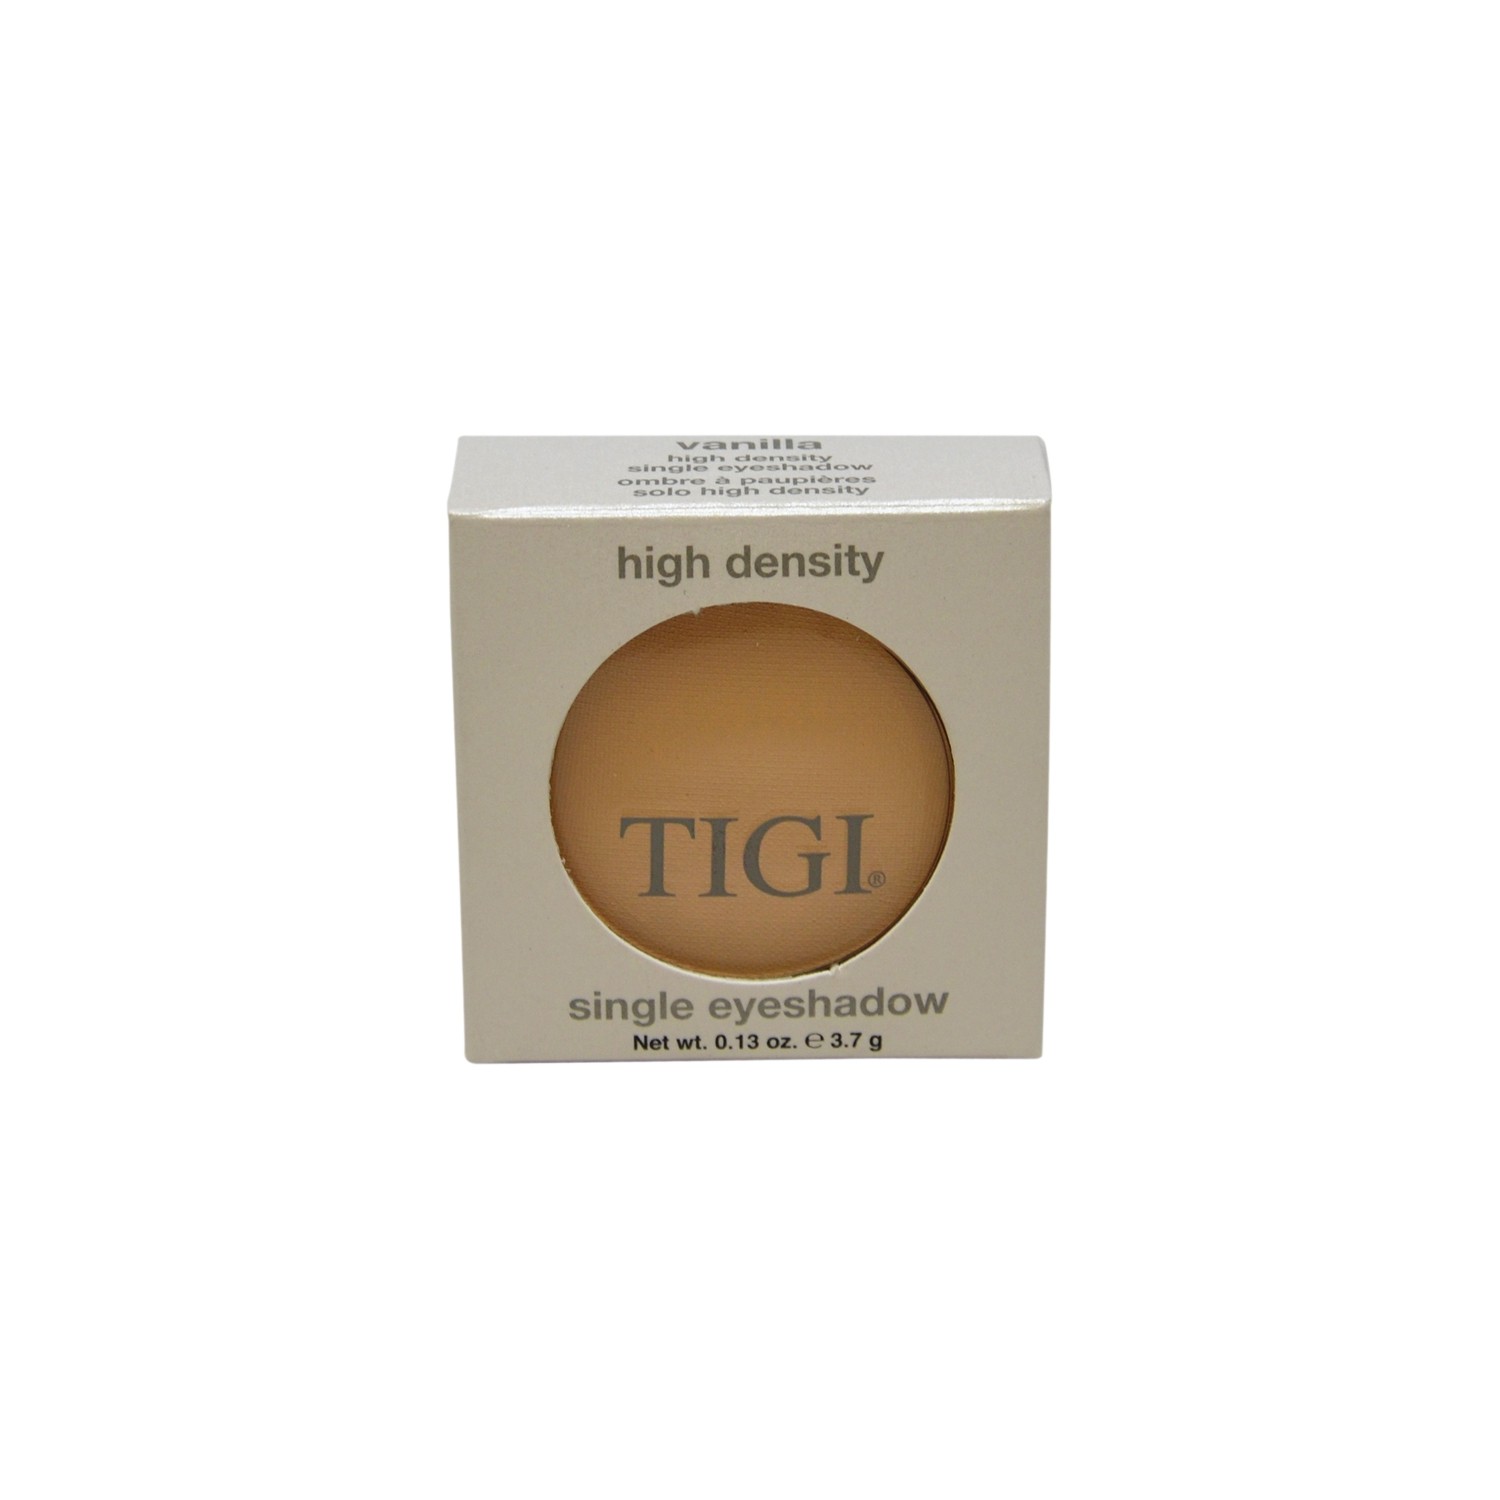 High Density Single Eyeshadow Vanilla by TIGI for Women - 0.13 oz Eyeshadow